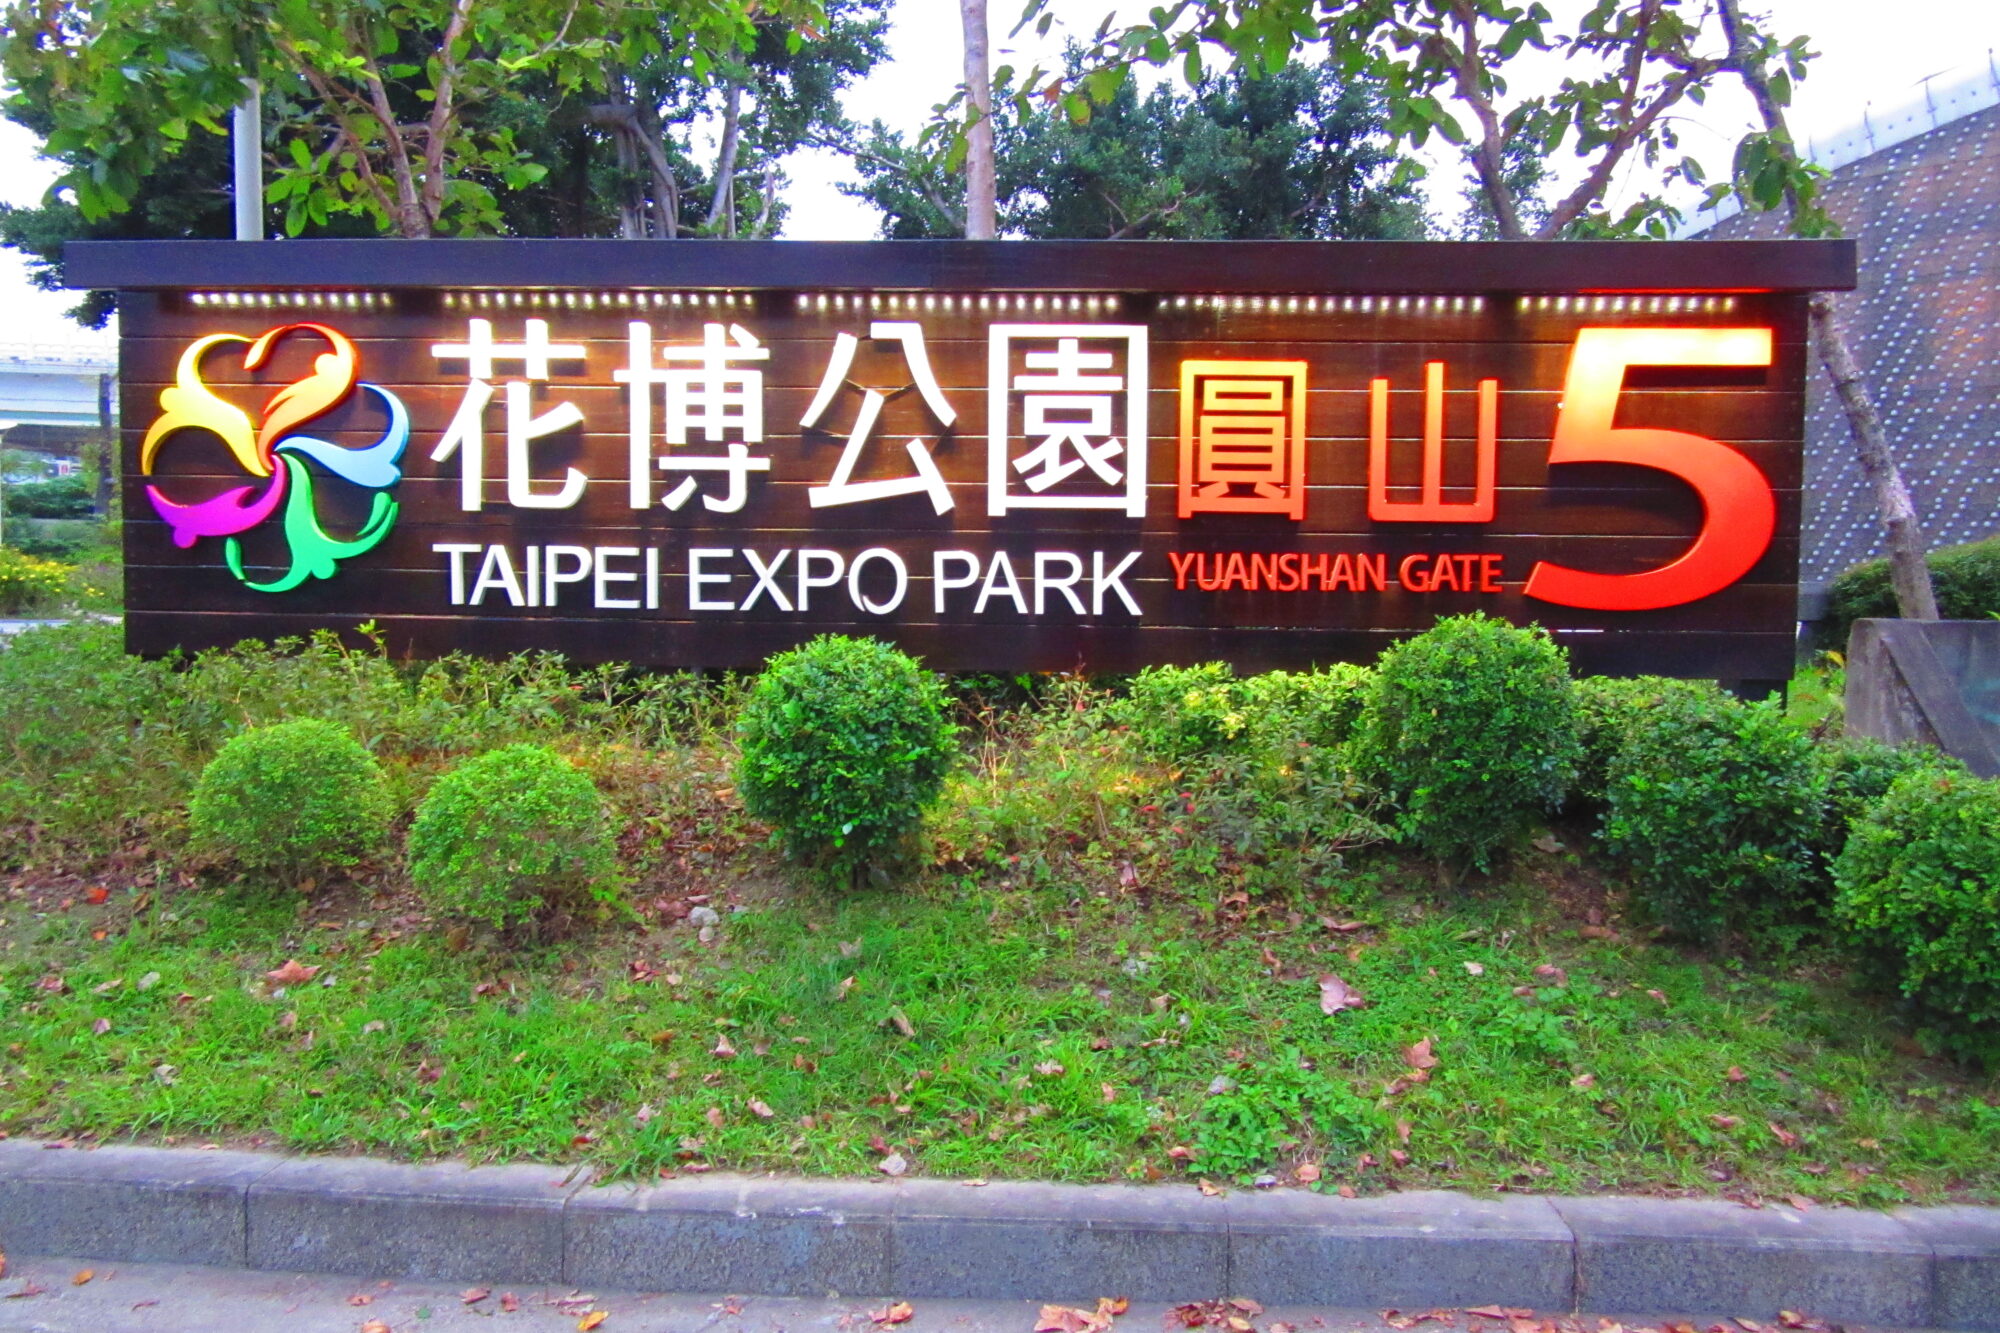 The Taipei Expo Park